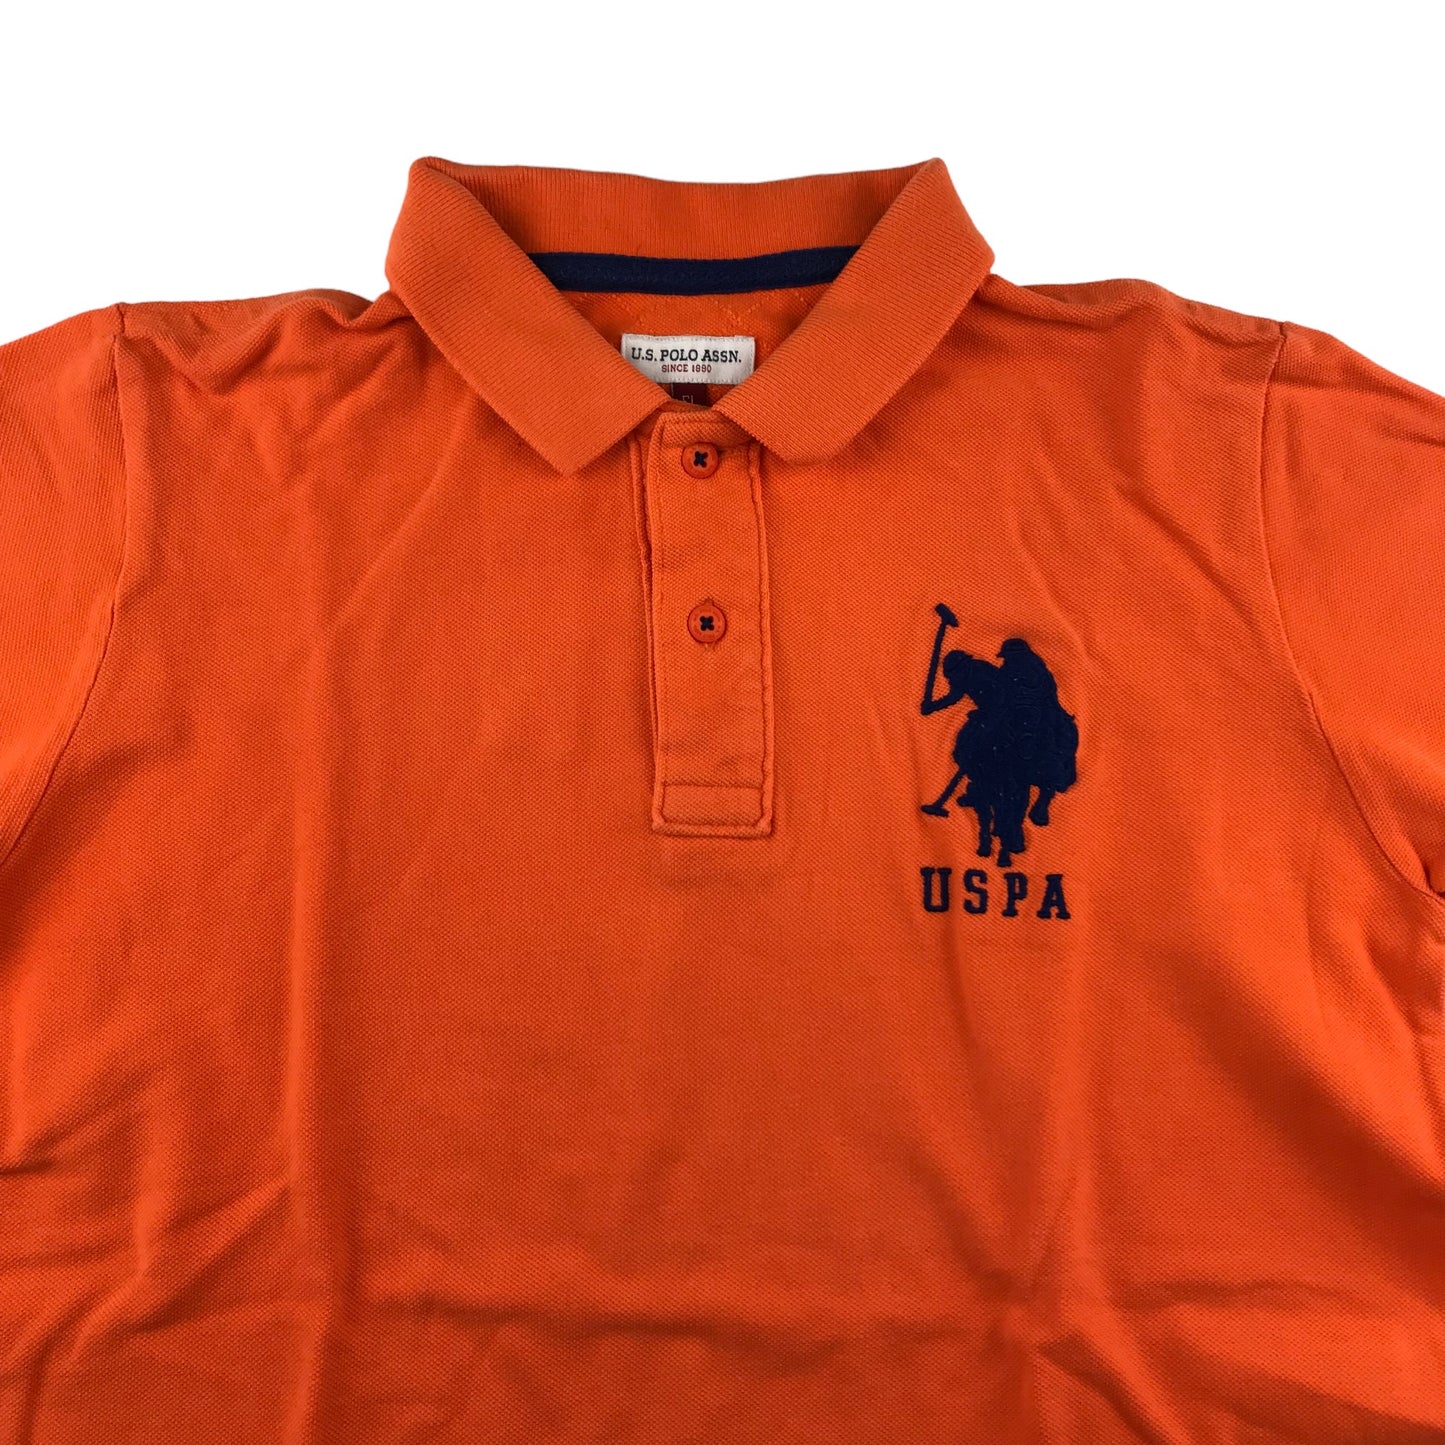 US Polo Assn Polo Shirt Age 14-16 Orange Short Sleeve Cotton